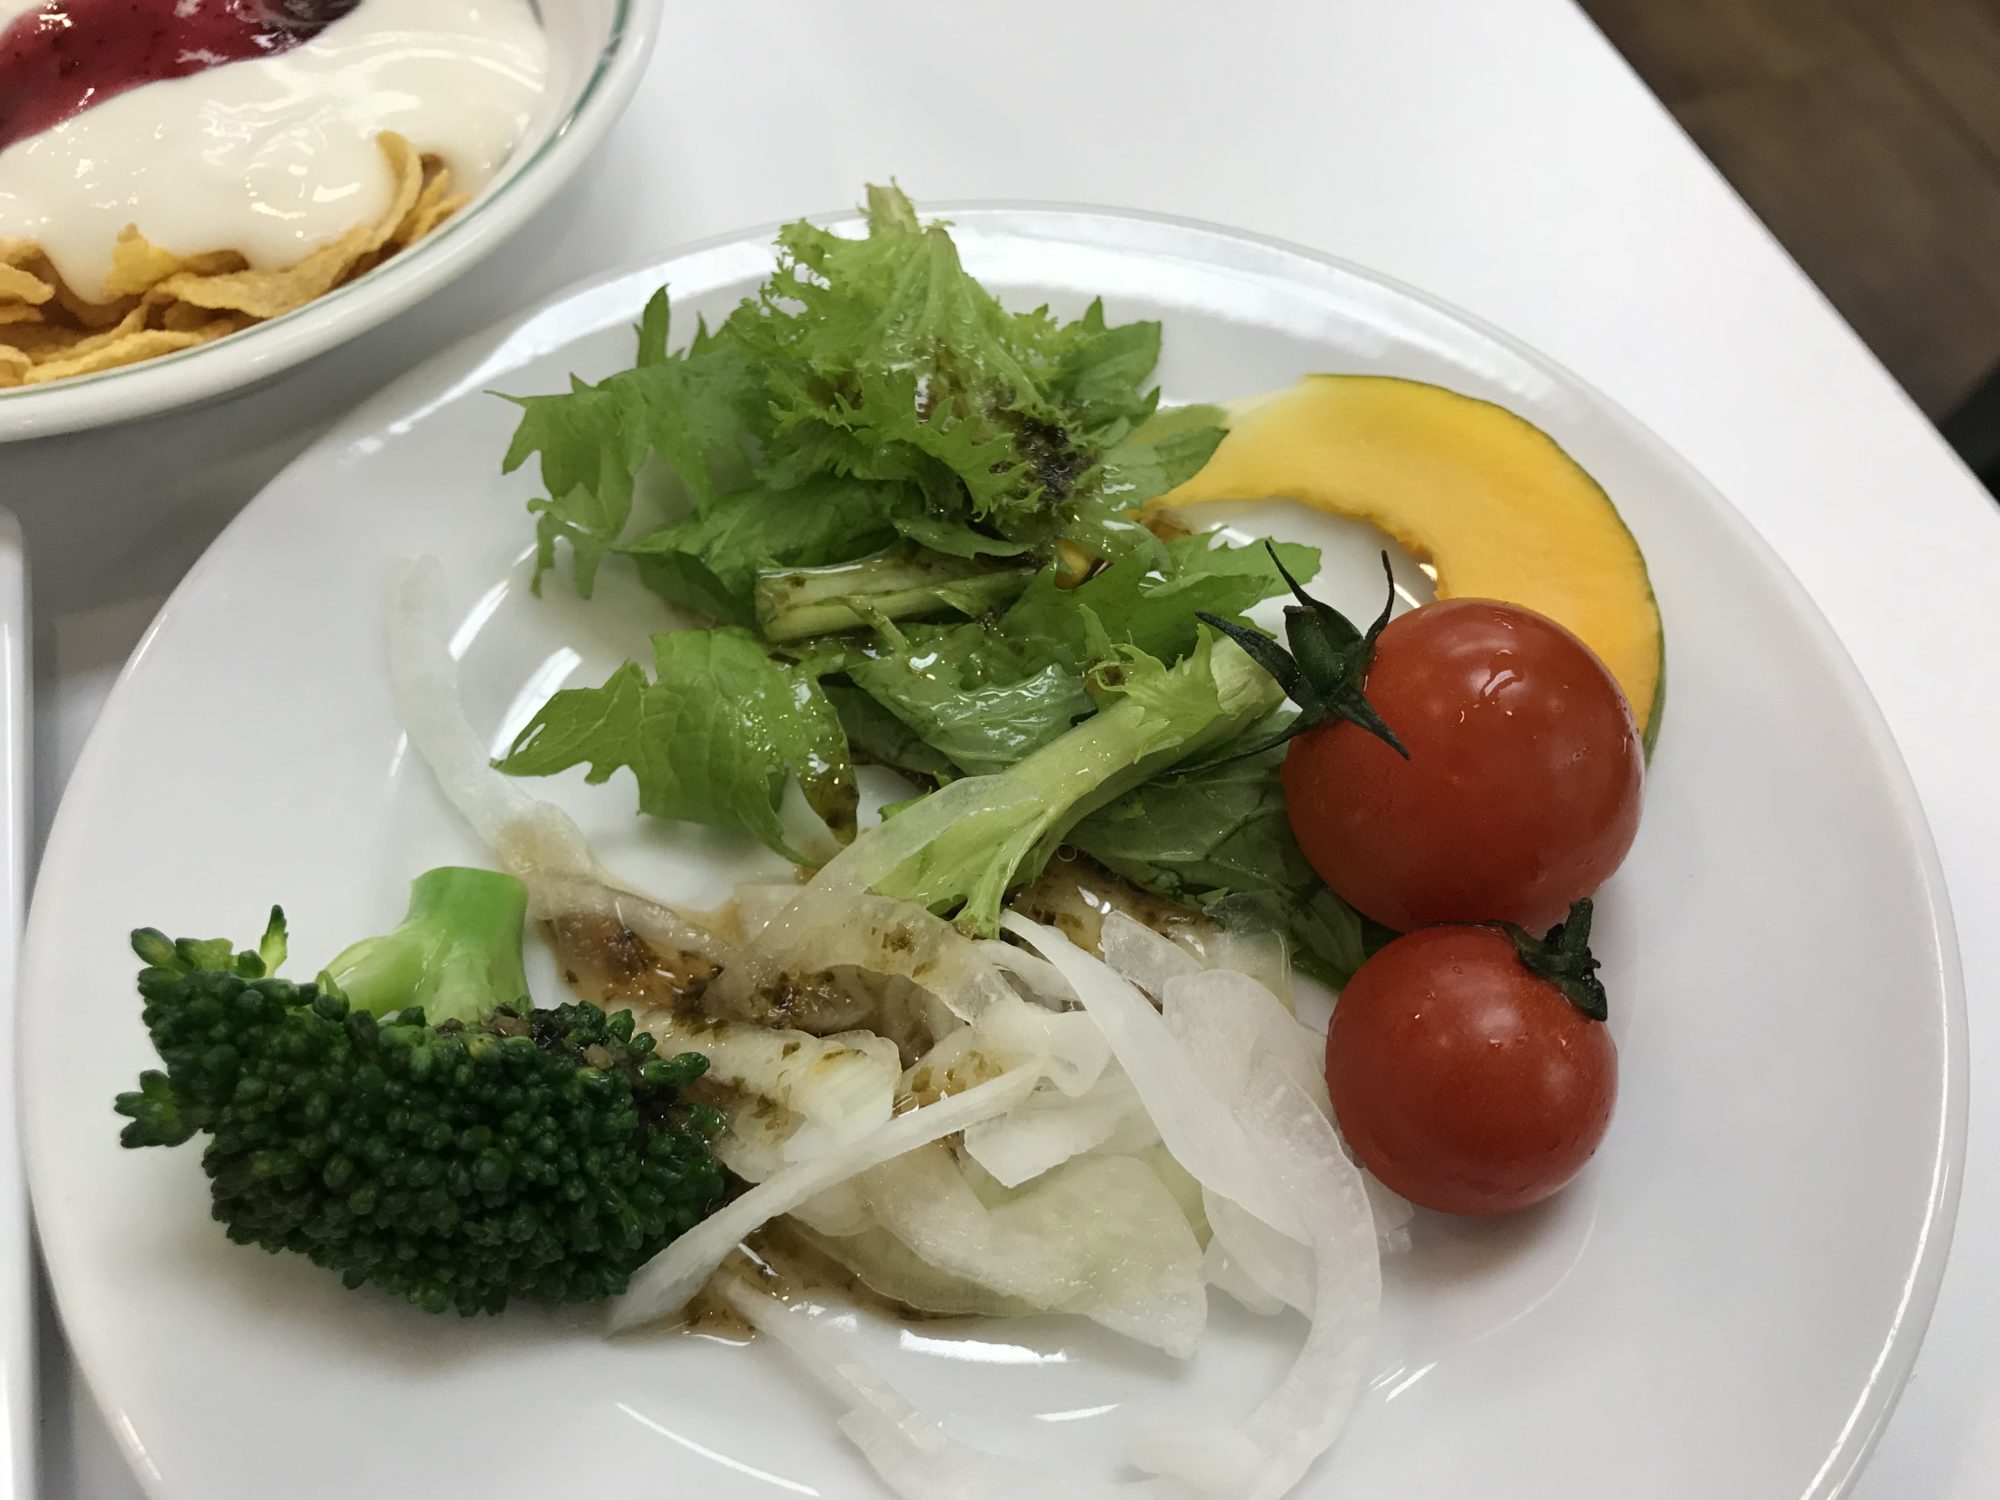 大阪コロナホテル朝食